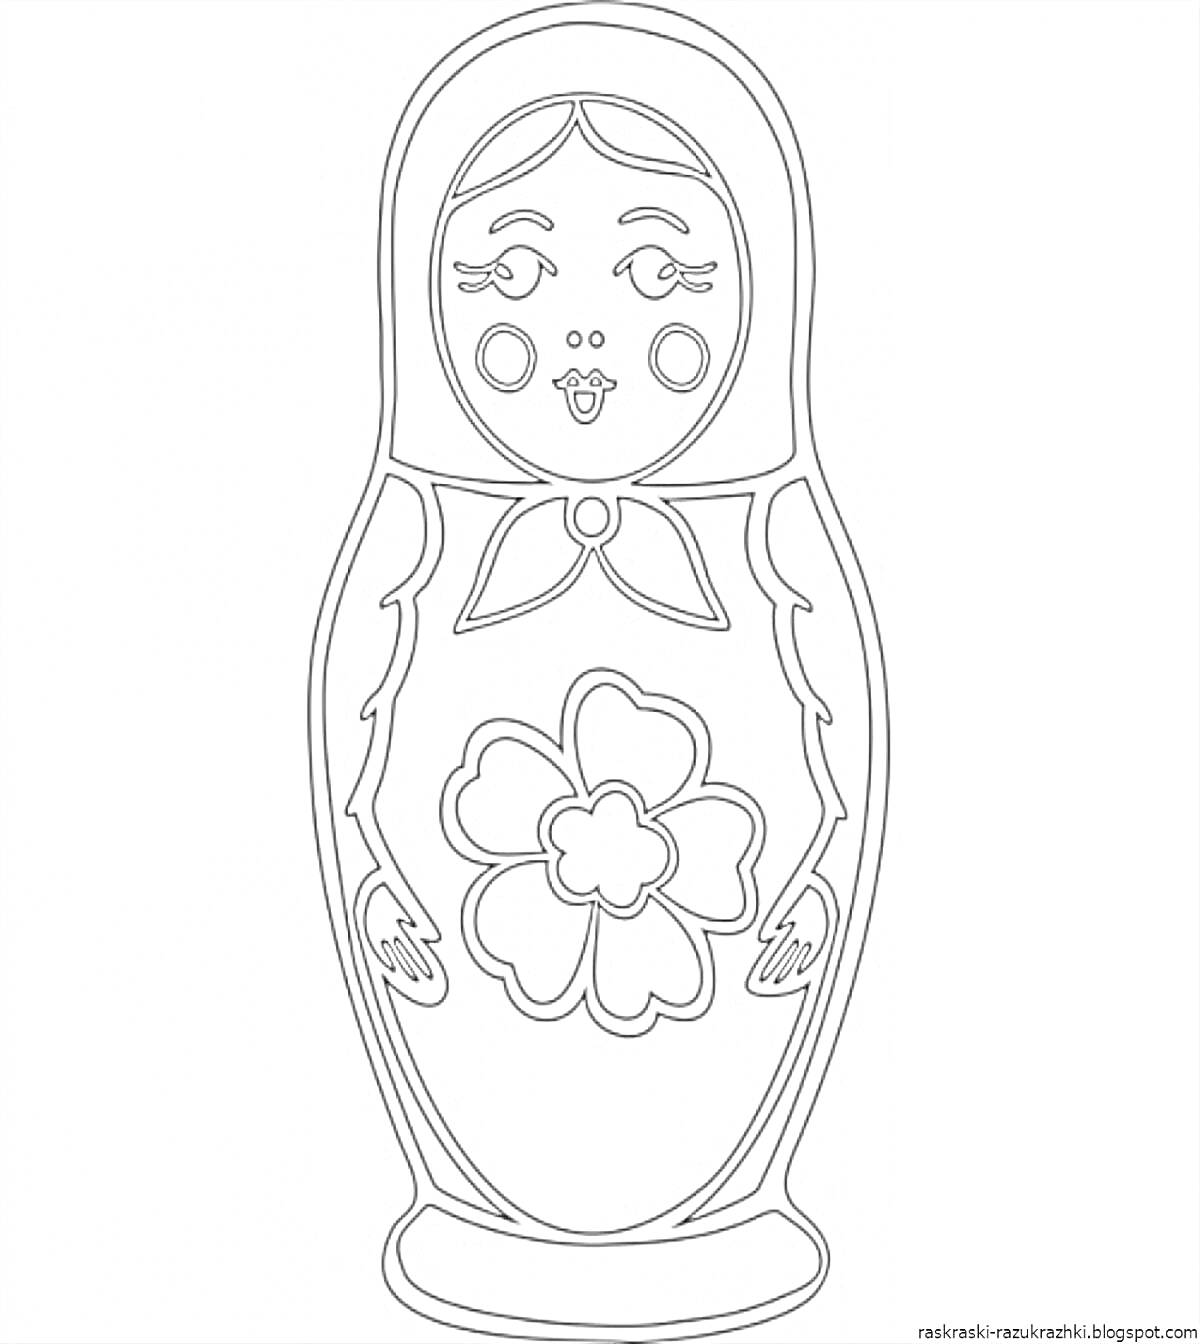 Раскраска Матрешка с крупным цветком посередине и платком на голове